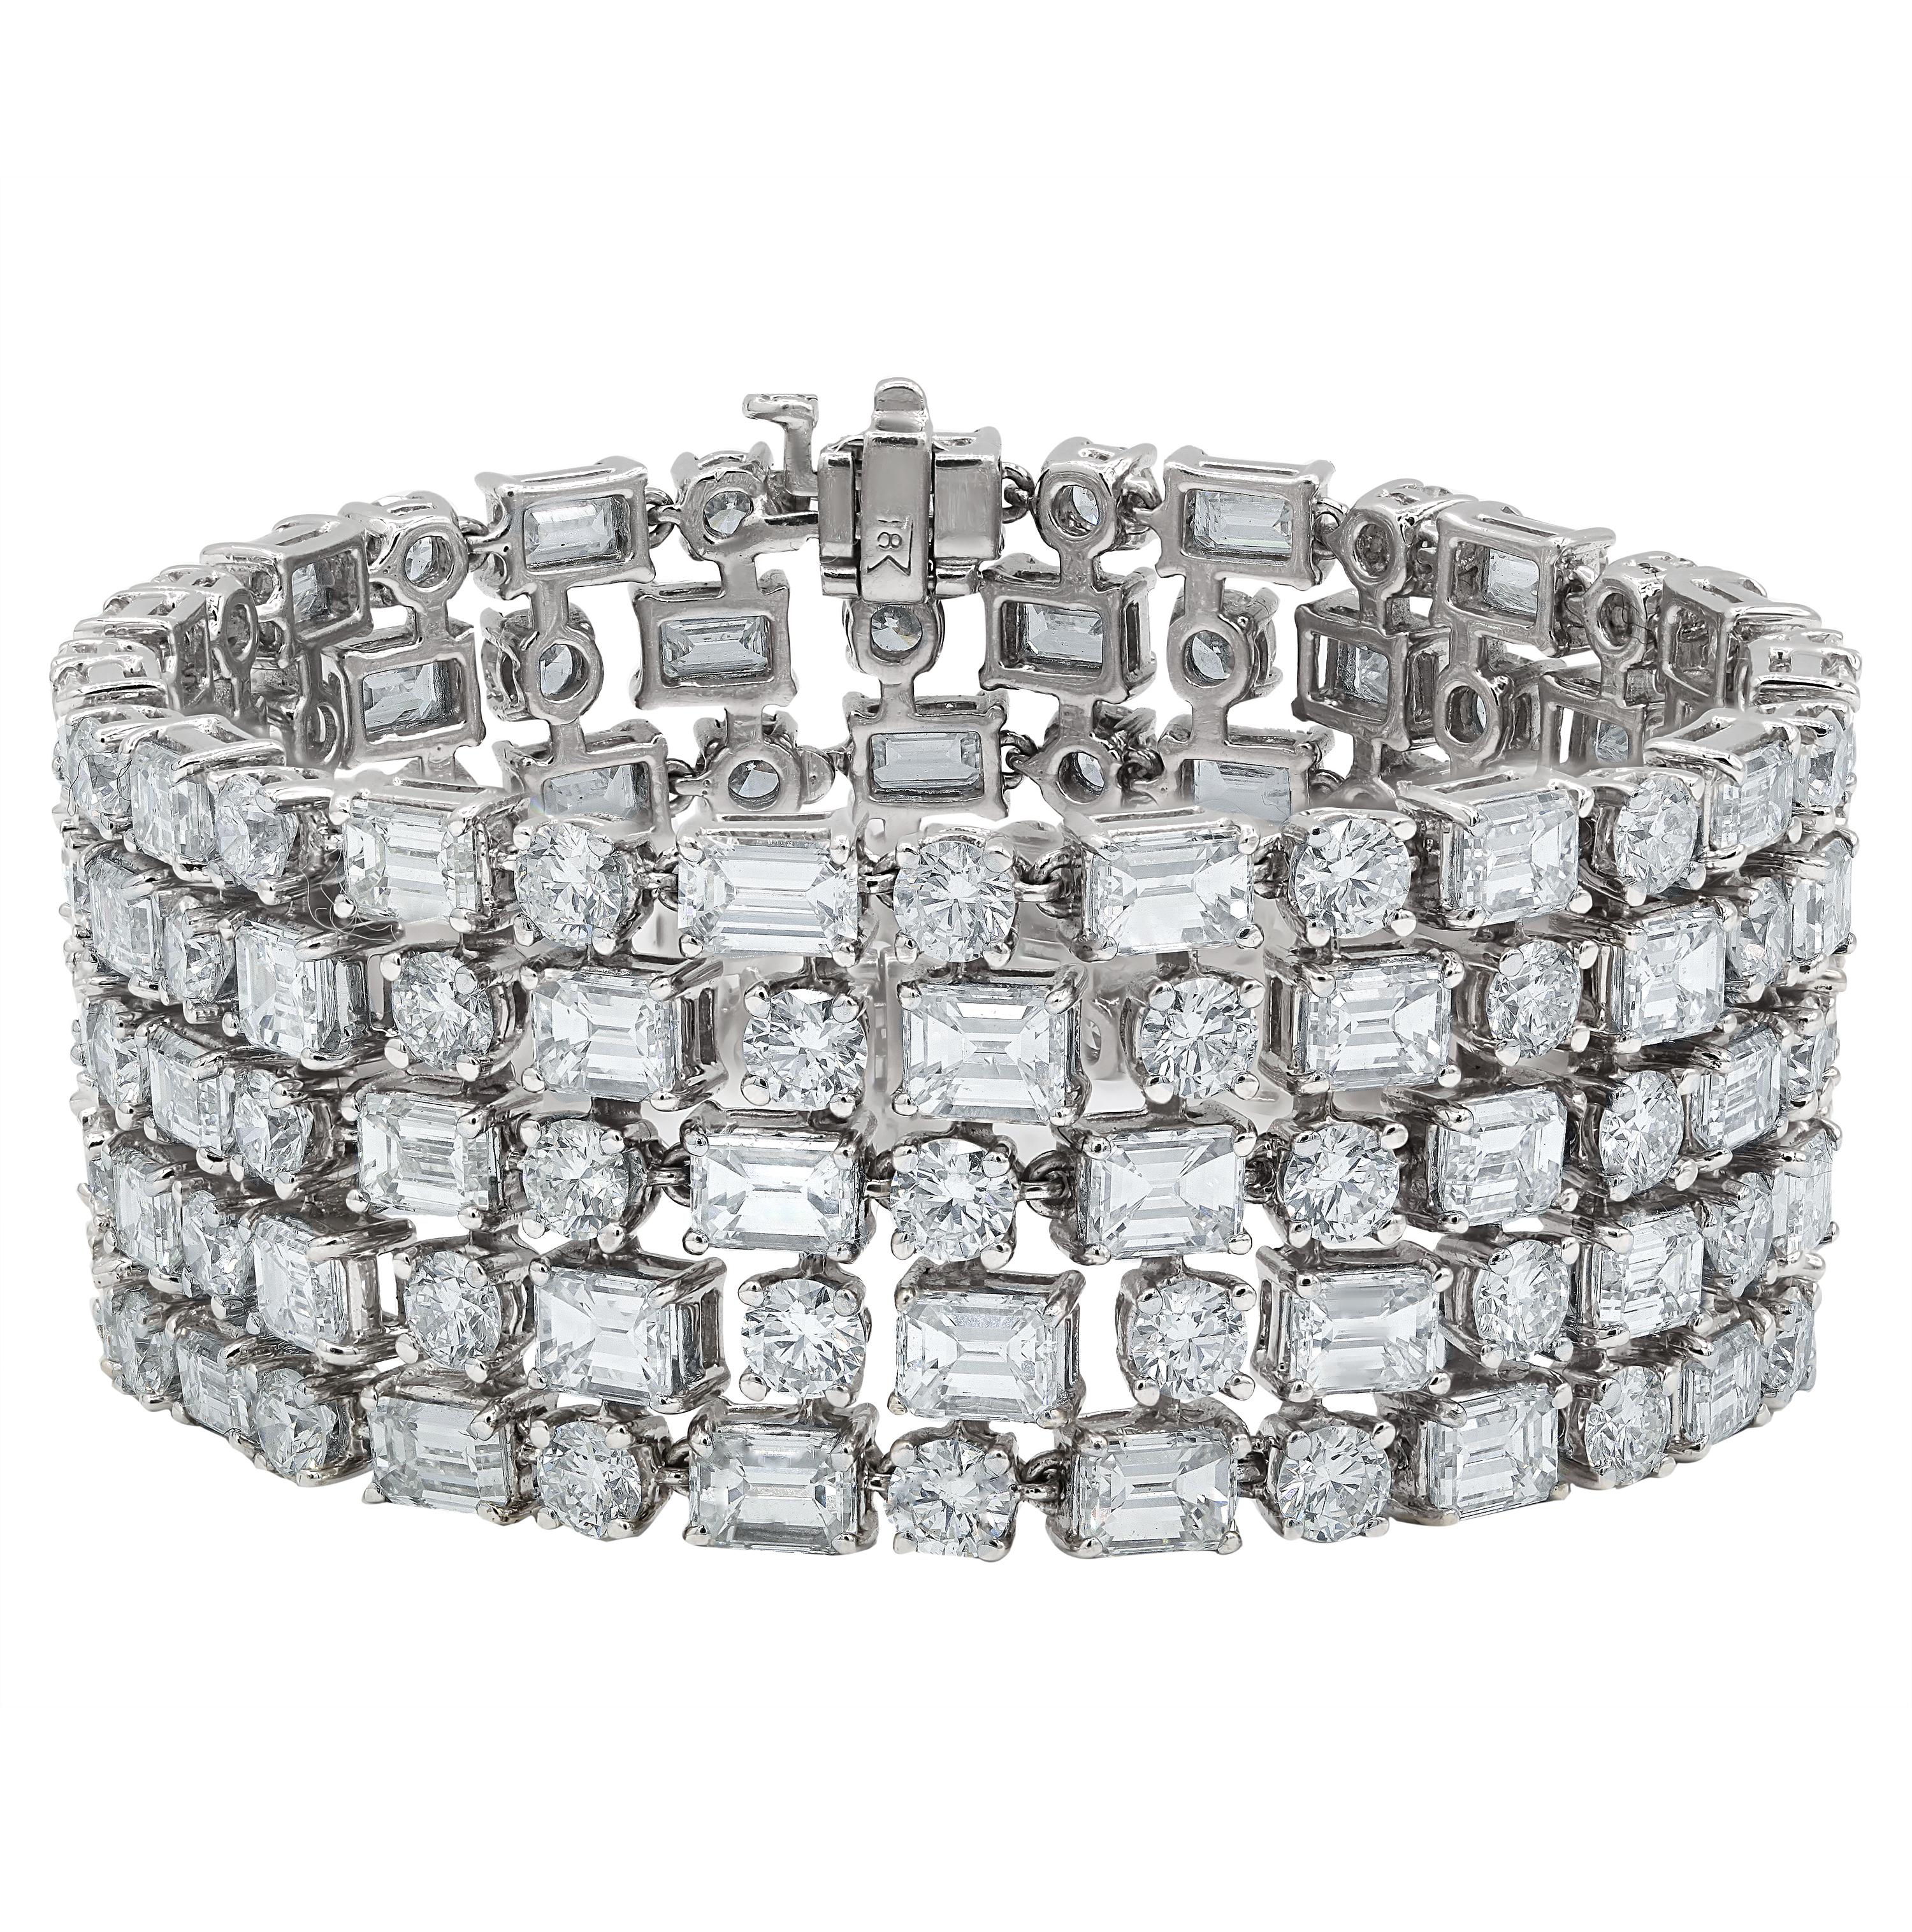 Armband aus 18 Karat Weißgold mit 50,00 Karat Diamanten im Smaragdschliff und runden Diamanten (G/H/I)  VVS/VS), die ein fünfreihiges Muster bilden
Diana M. ist seit über 35 Jahren ein führender Anbieter von hochwertigem Schmuck.
Diana M ist eine